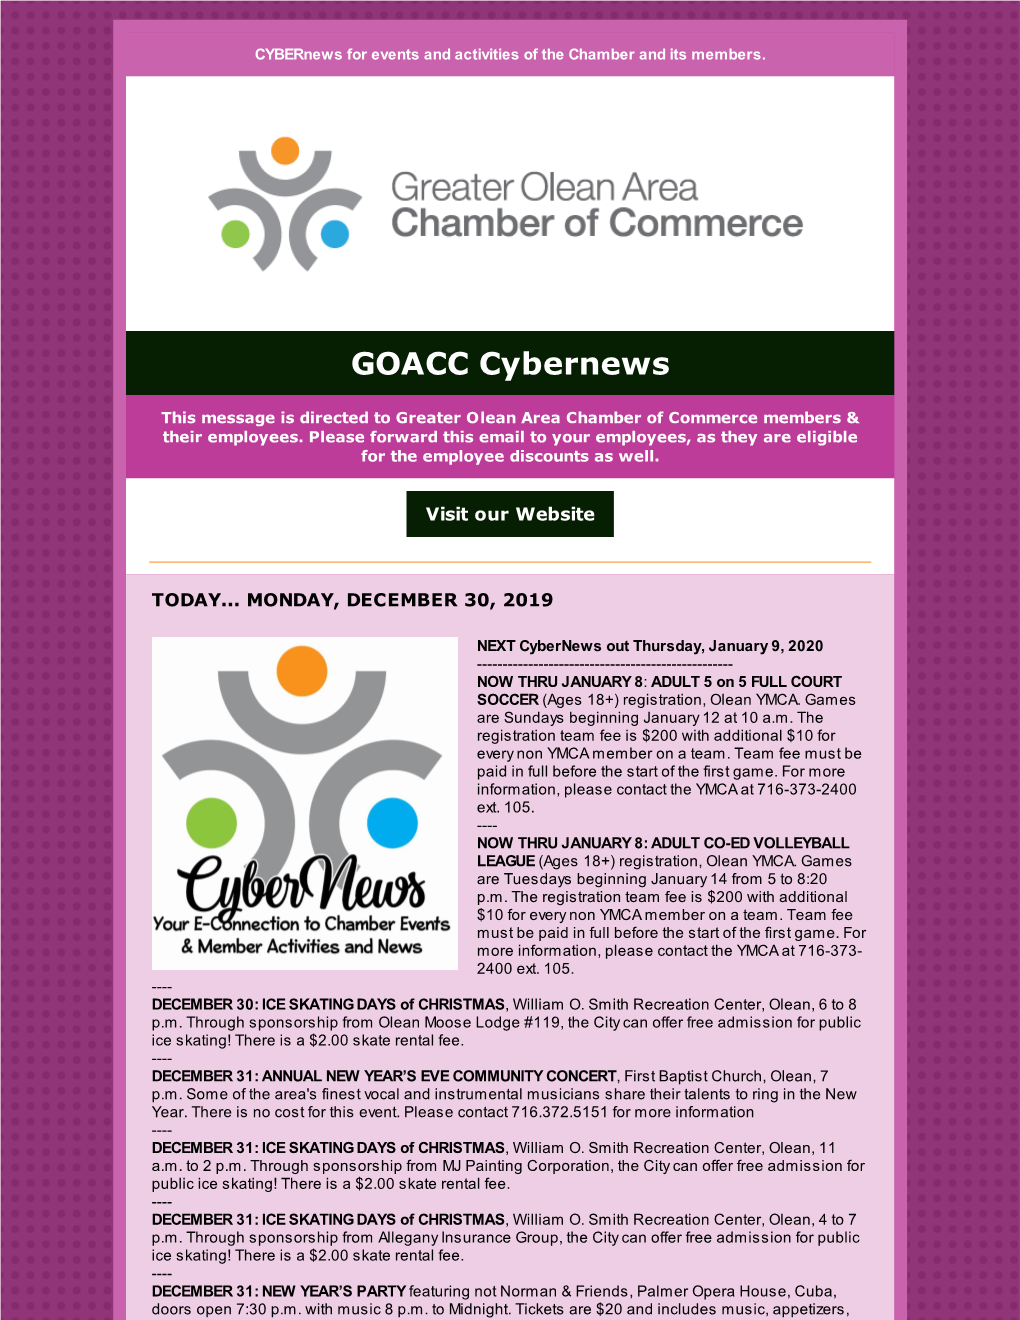 GOACC Cybernews